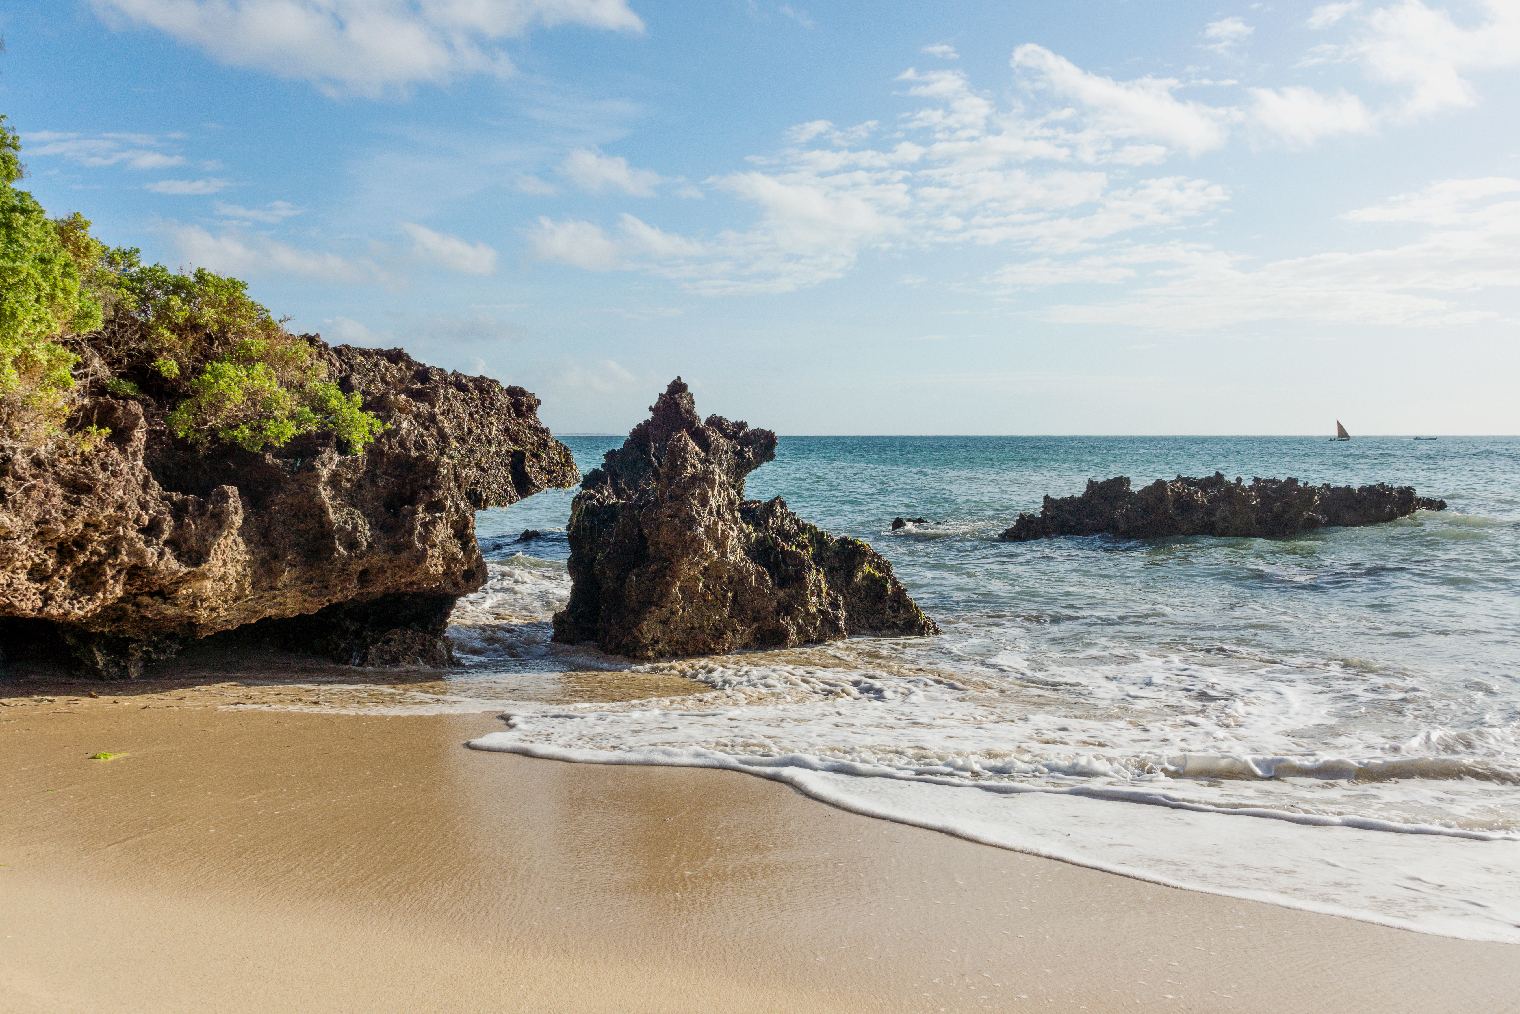 Пляж в Малинди. Фото: idfied / Shutterstock